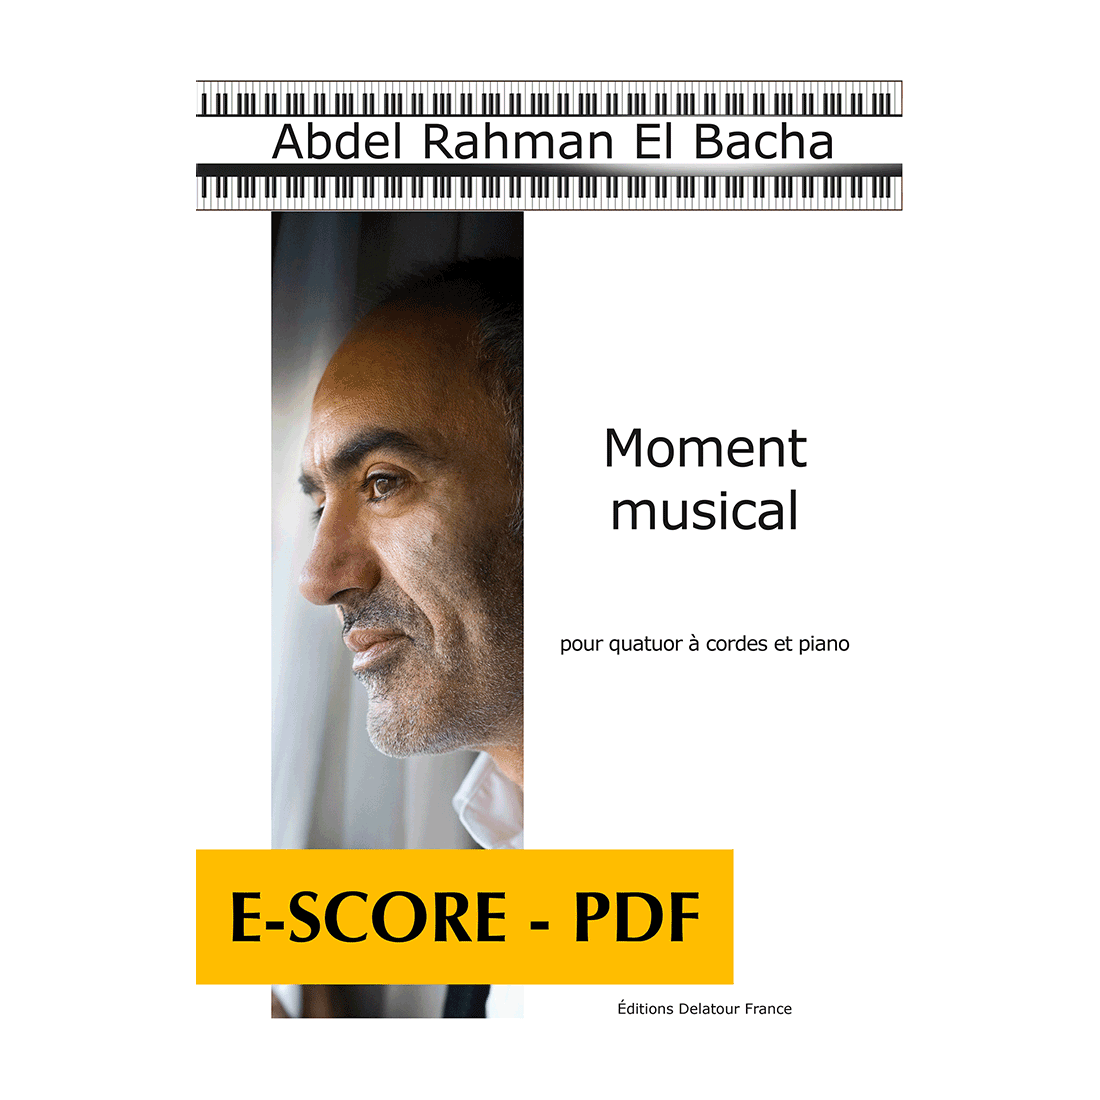 Moment musical pour quatuor à cordes et piano - E-score PDF